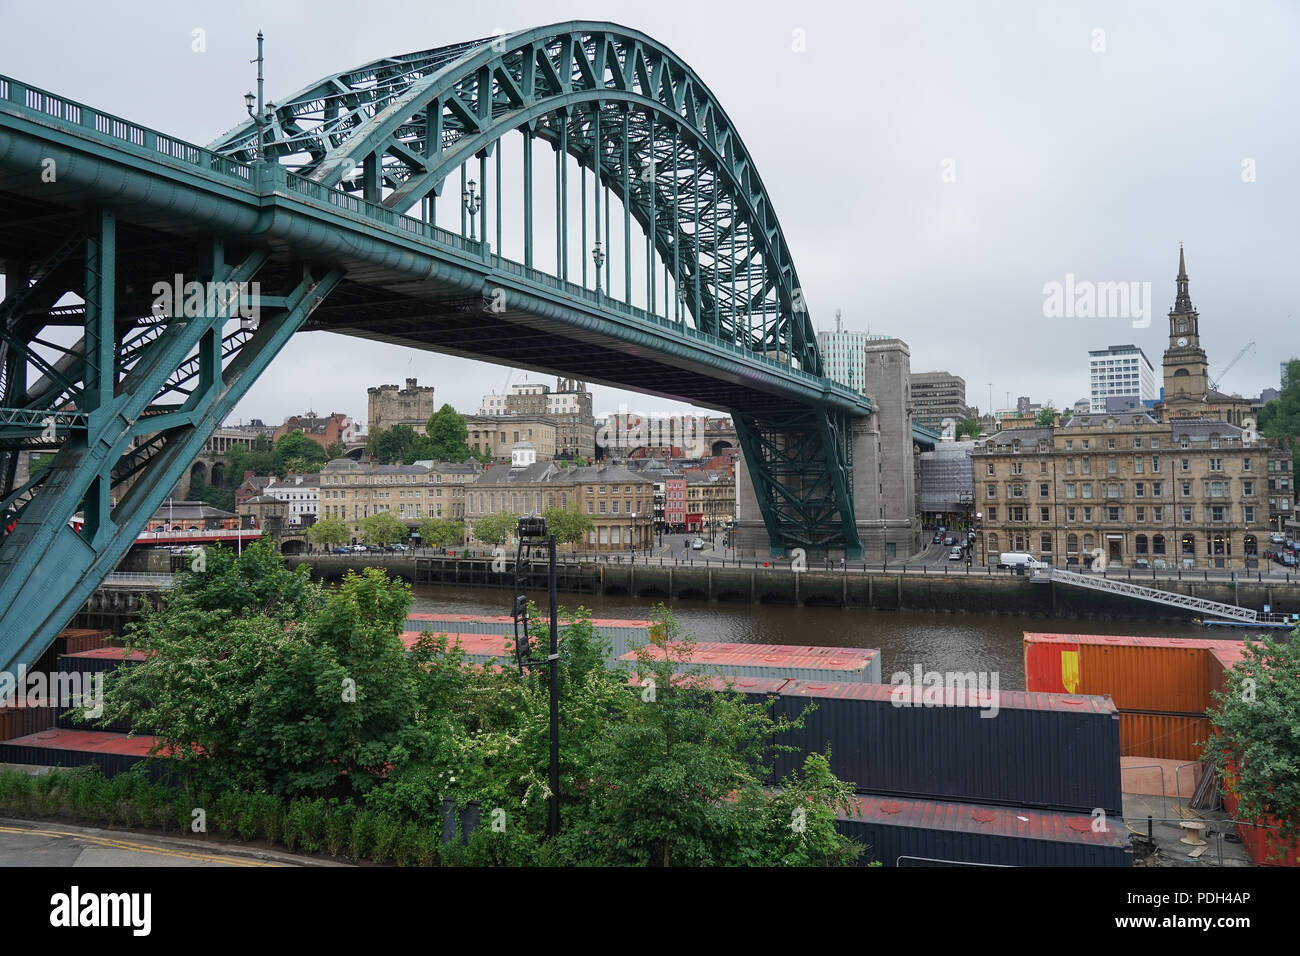 Une vue sur le Tyne Bridge sur la rivière Tyne dans la ville de Newcastle, Royaume-Uni. Date de la photo : le lundi 11 juin 2018. Photo : Roger Garfield Banque D'Images